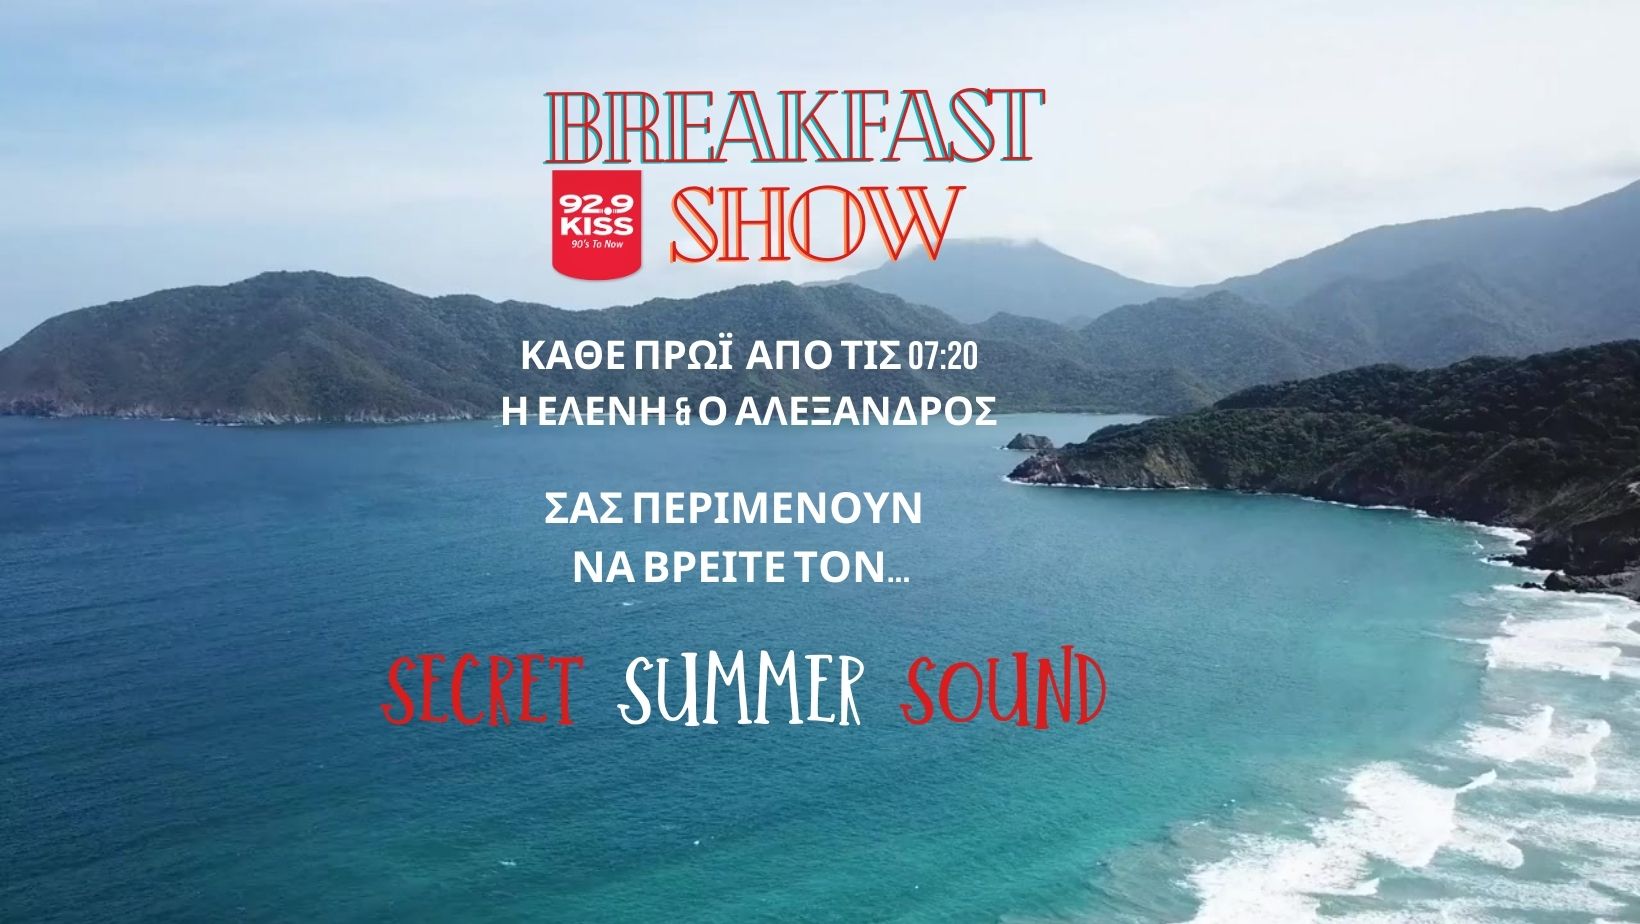 Secret Summer Sound